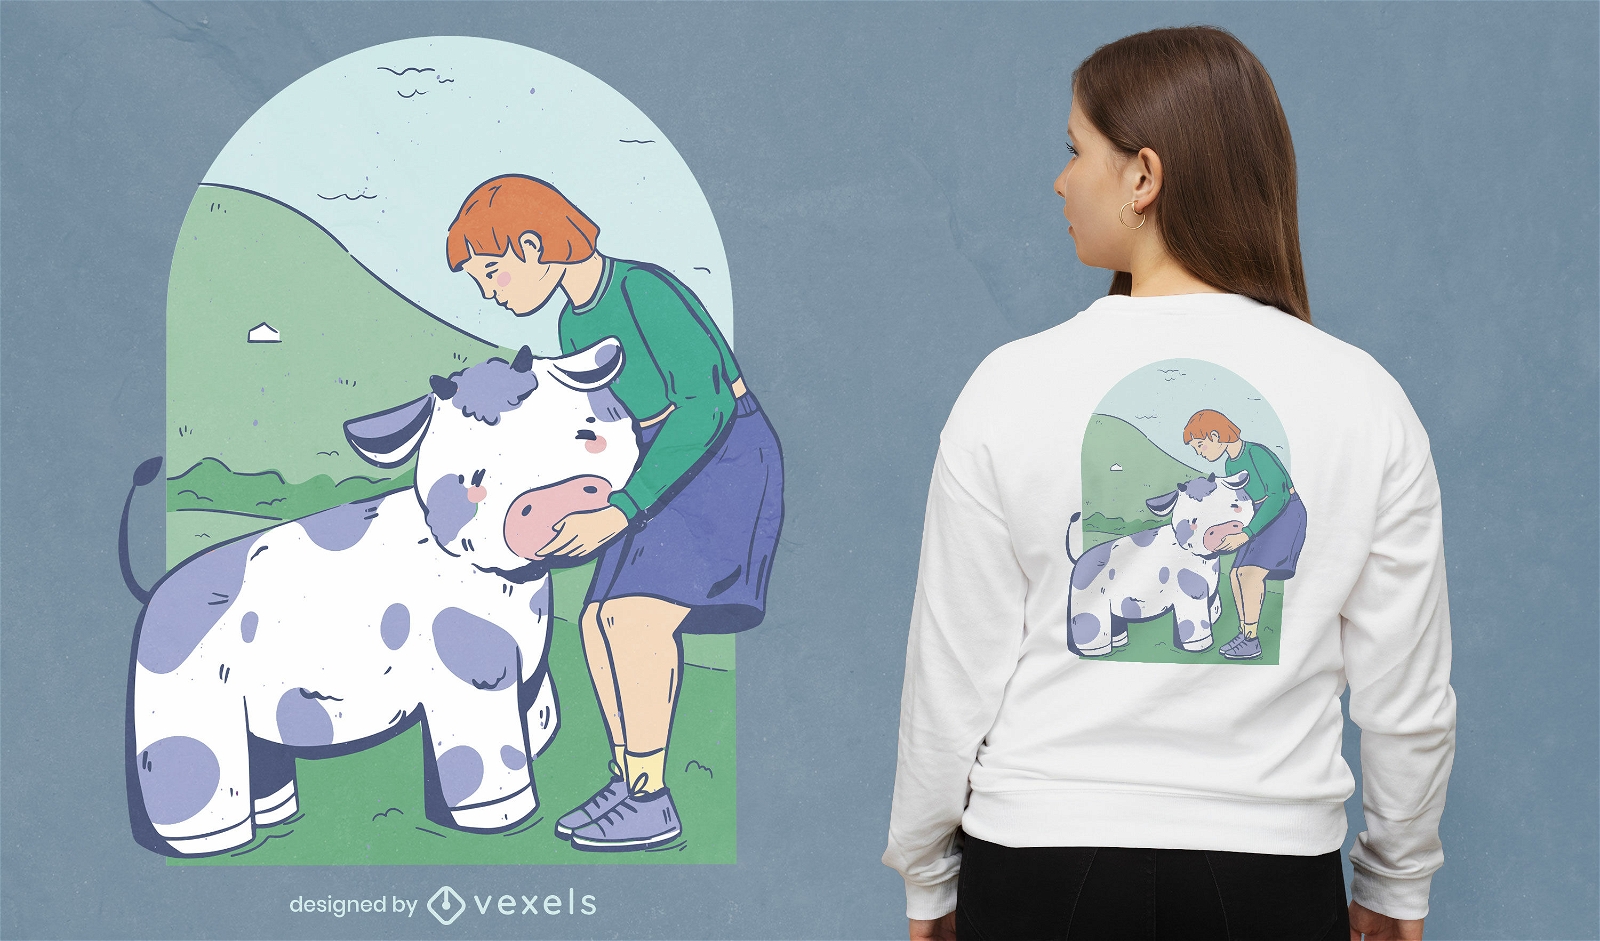 Dise?o de camiseta linda chica y vaca.